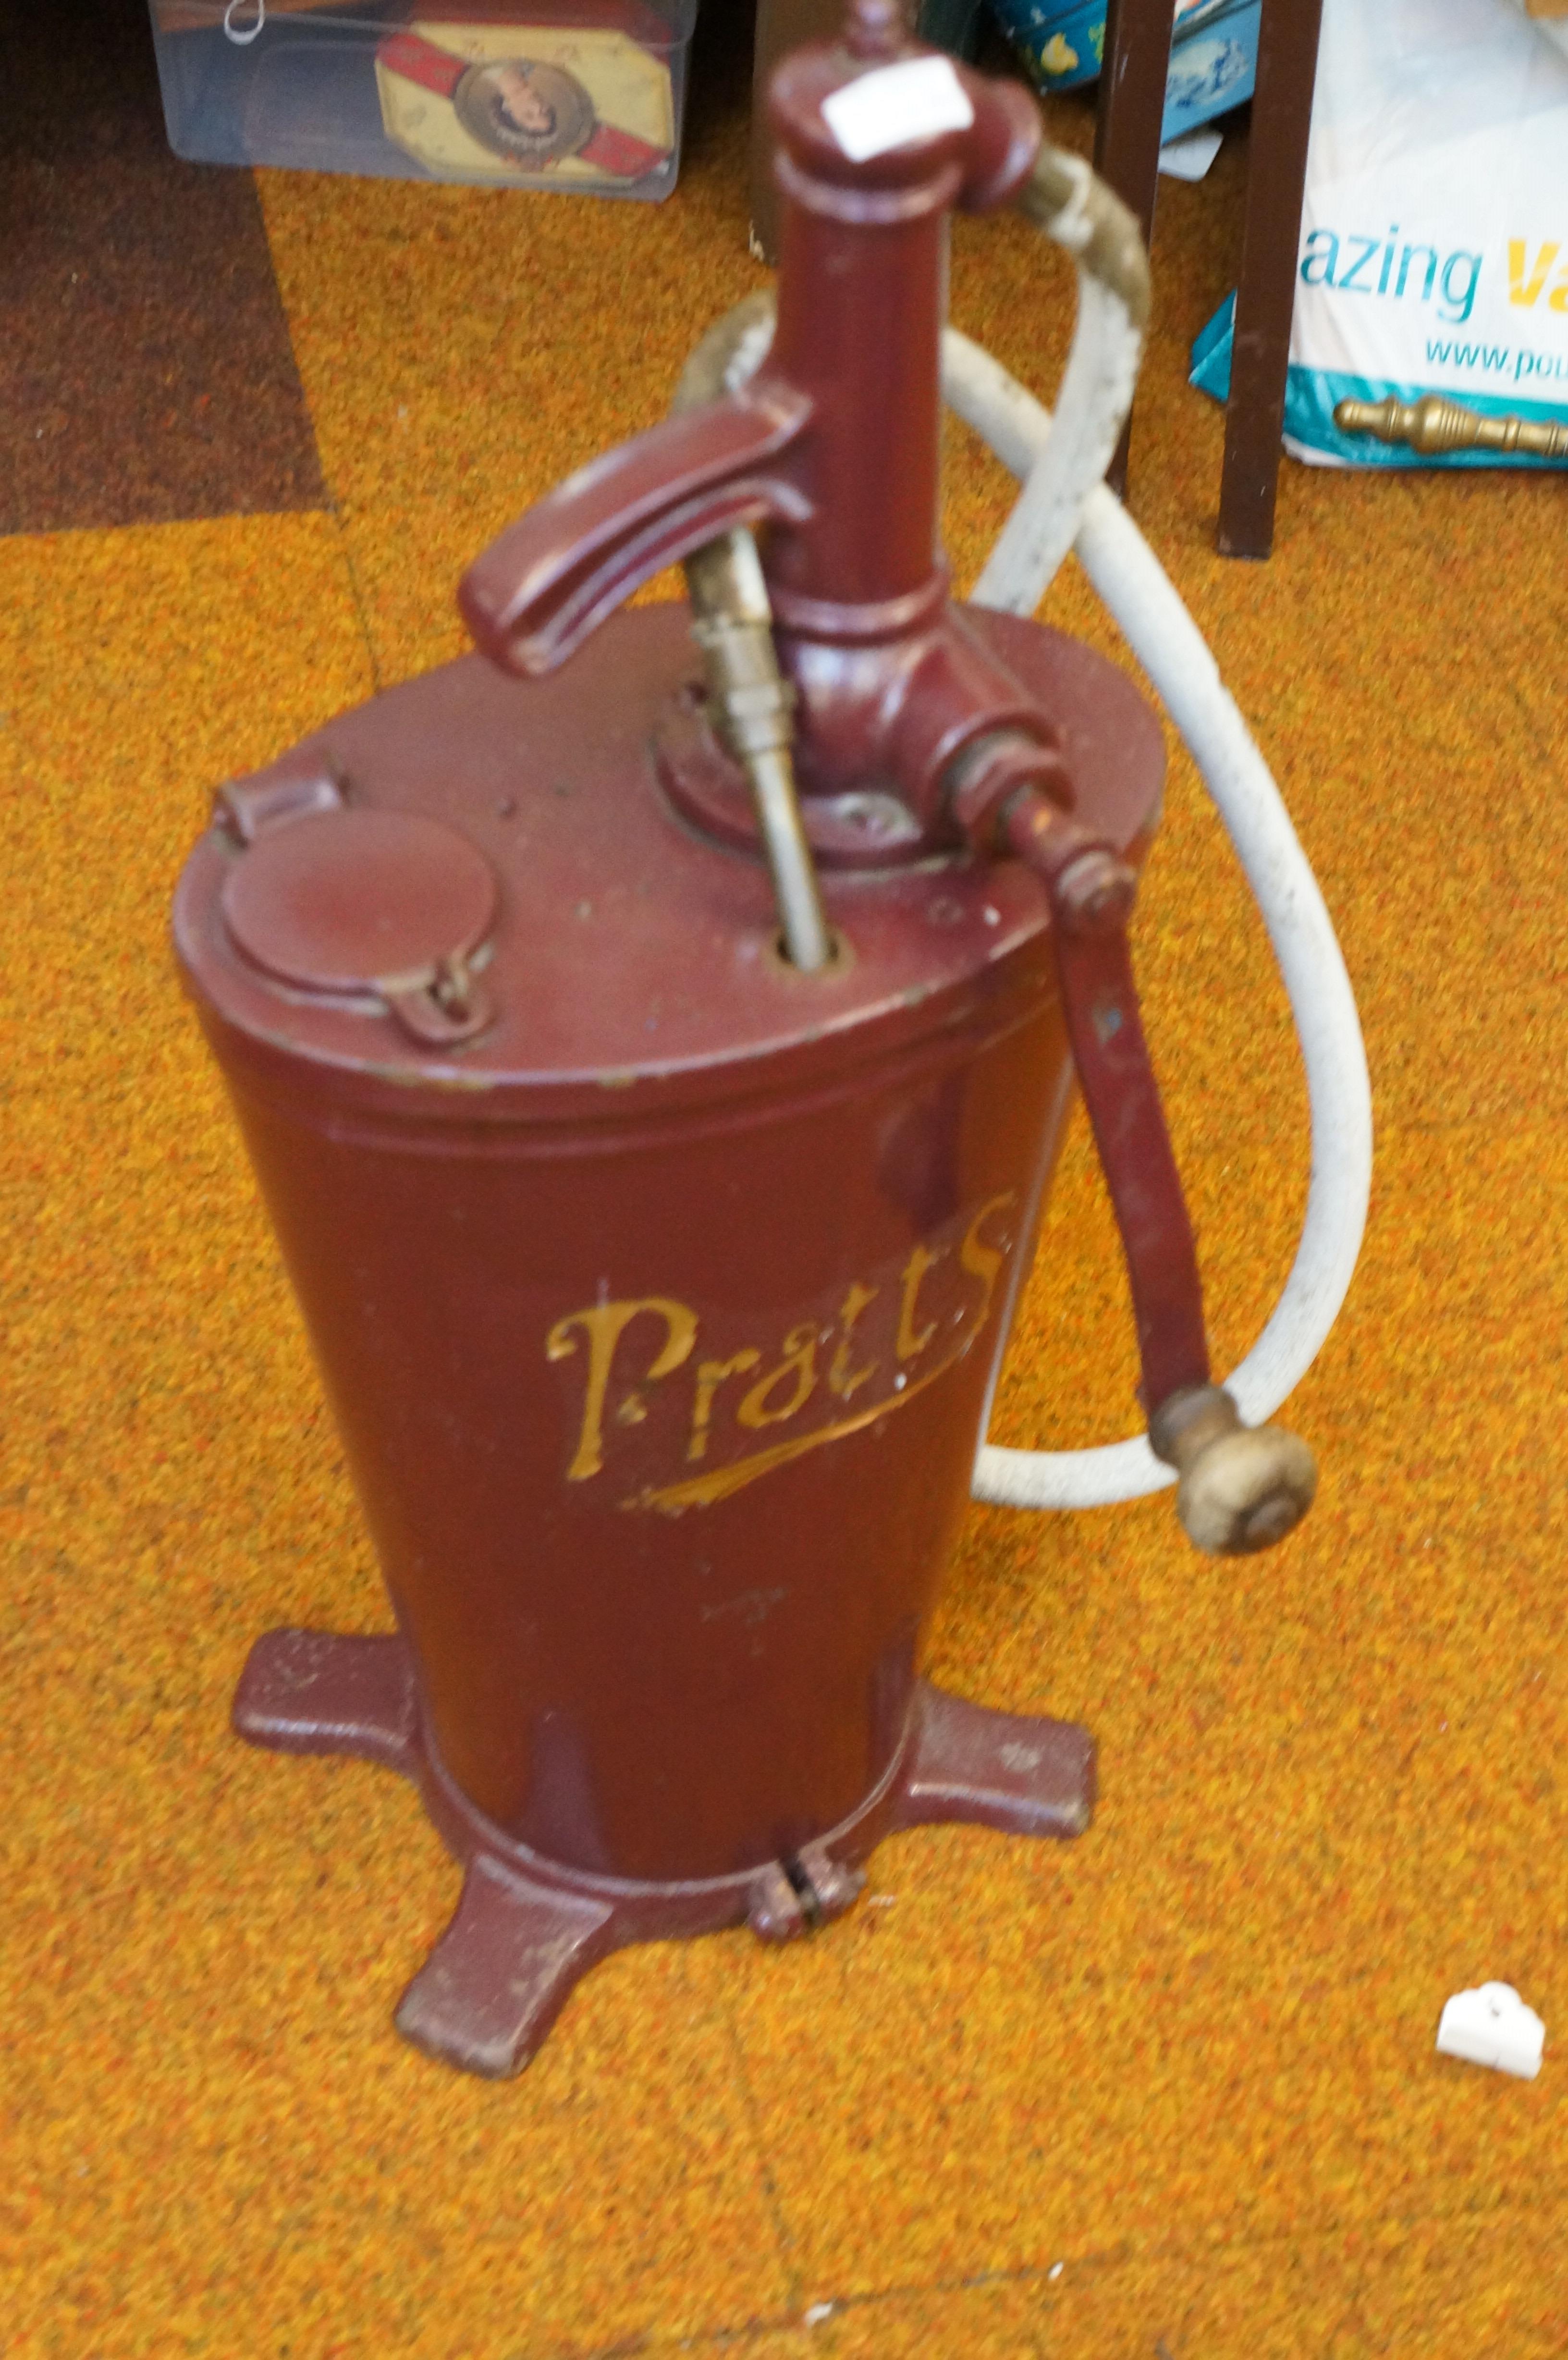 An original Pratts oil pump